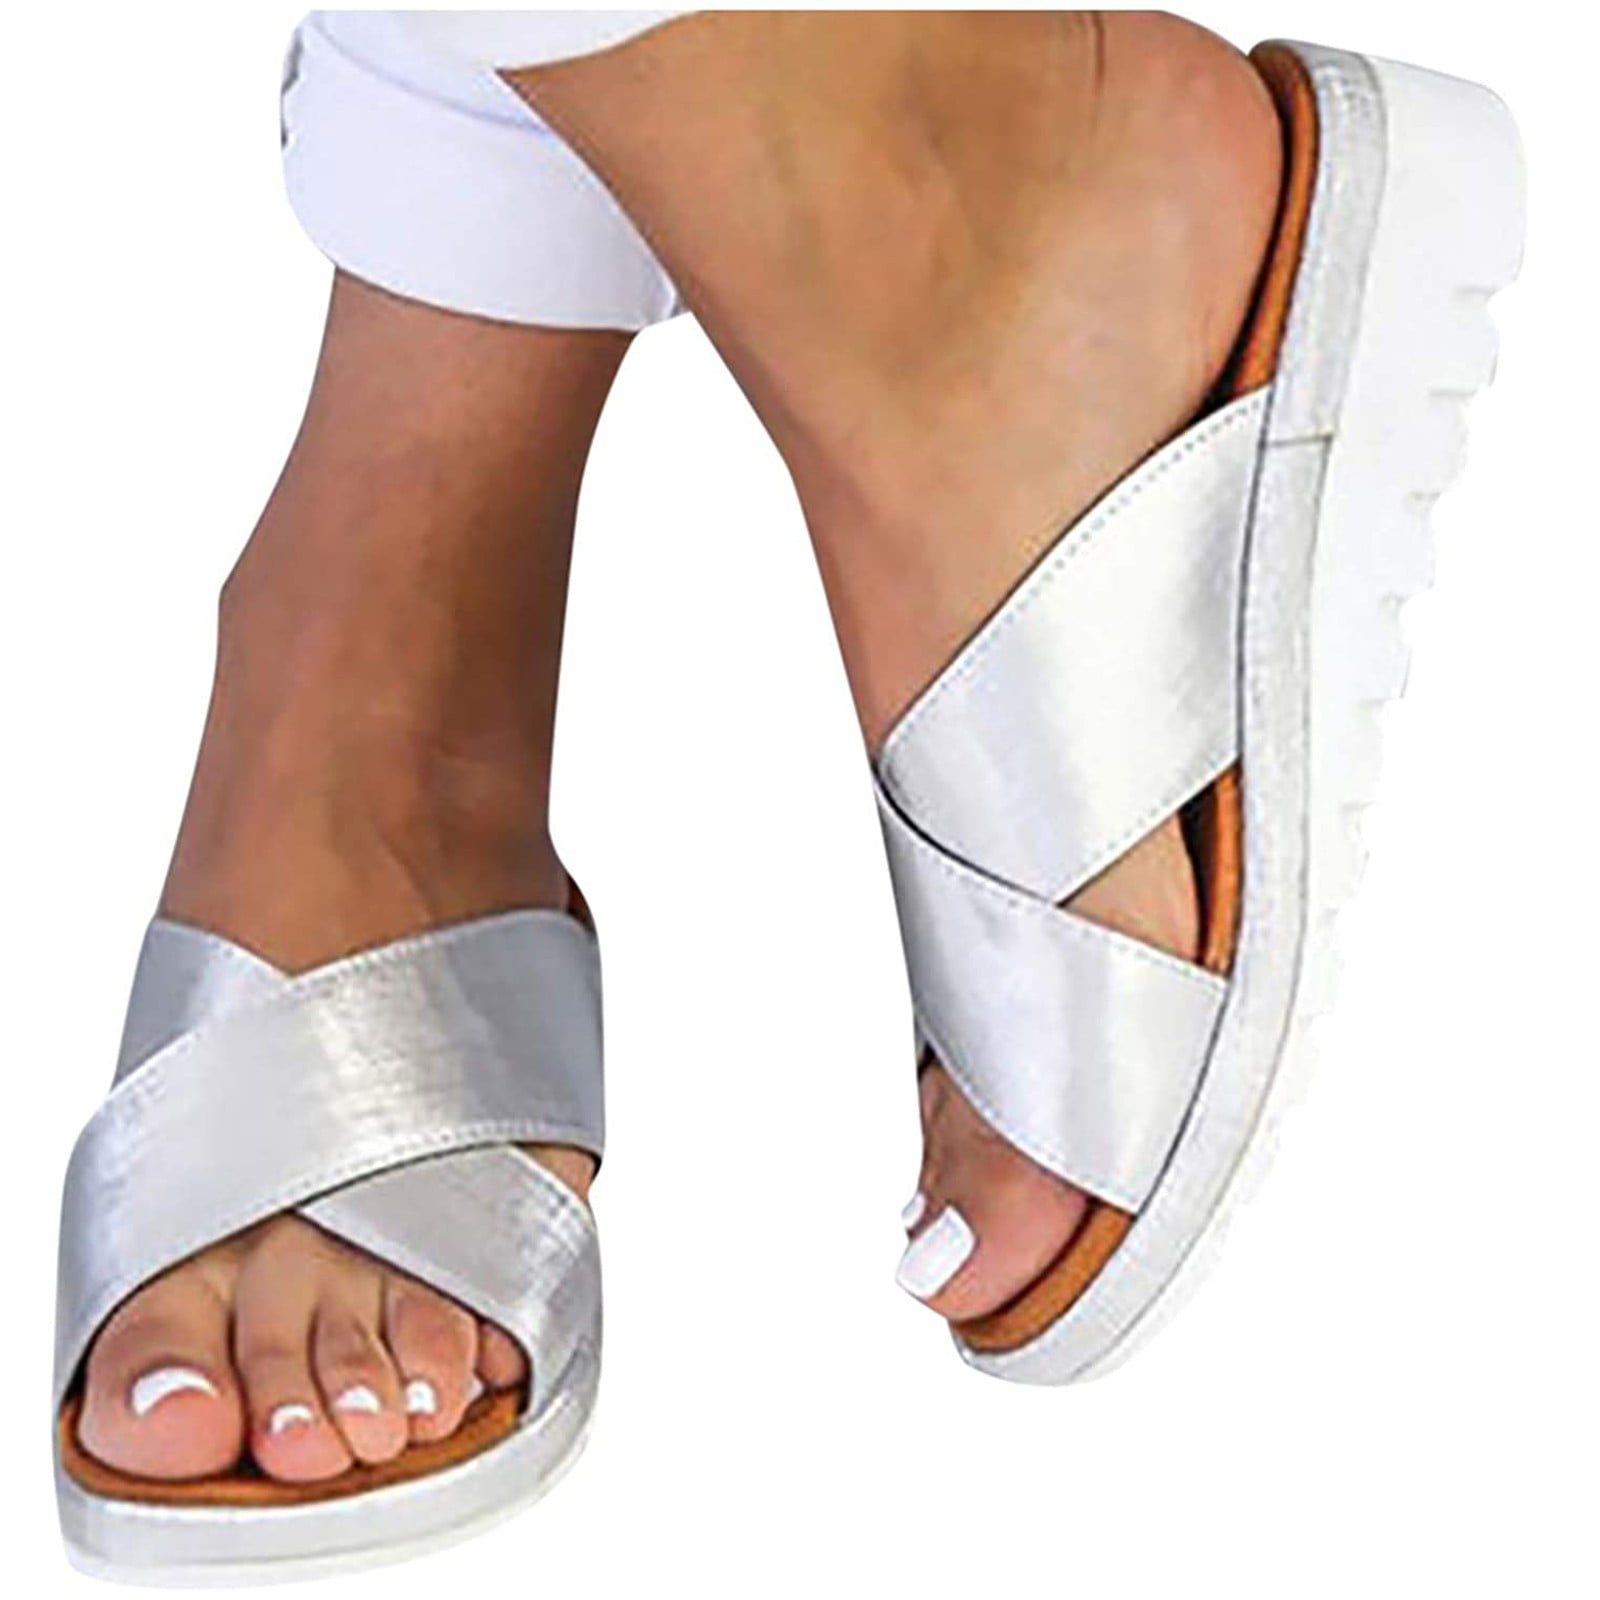 Comfy Platform Sandals Gibobby 2019 Wedge Sandal Shoe American Flag Summer Beach Travel Shoes Slipper Flip Flop 